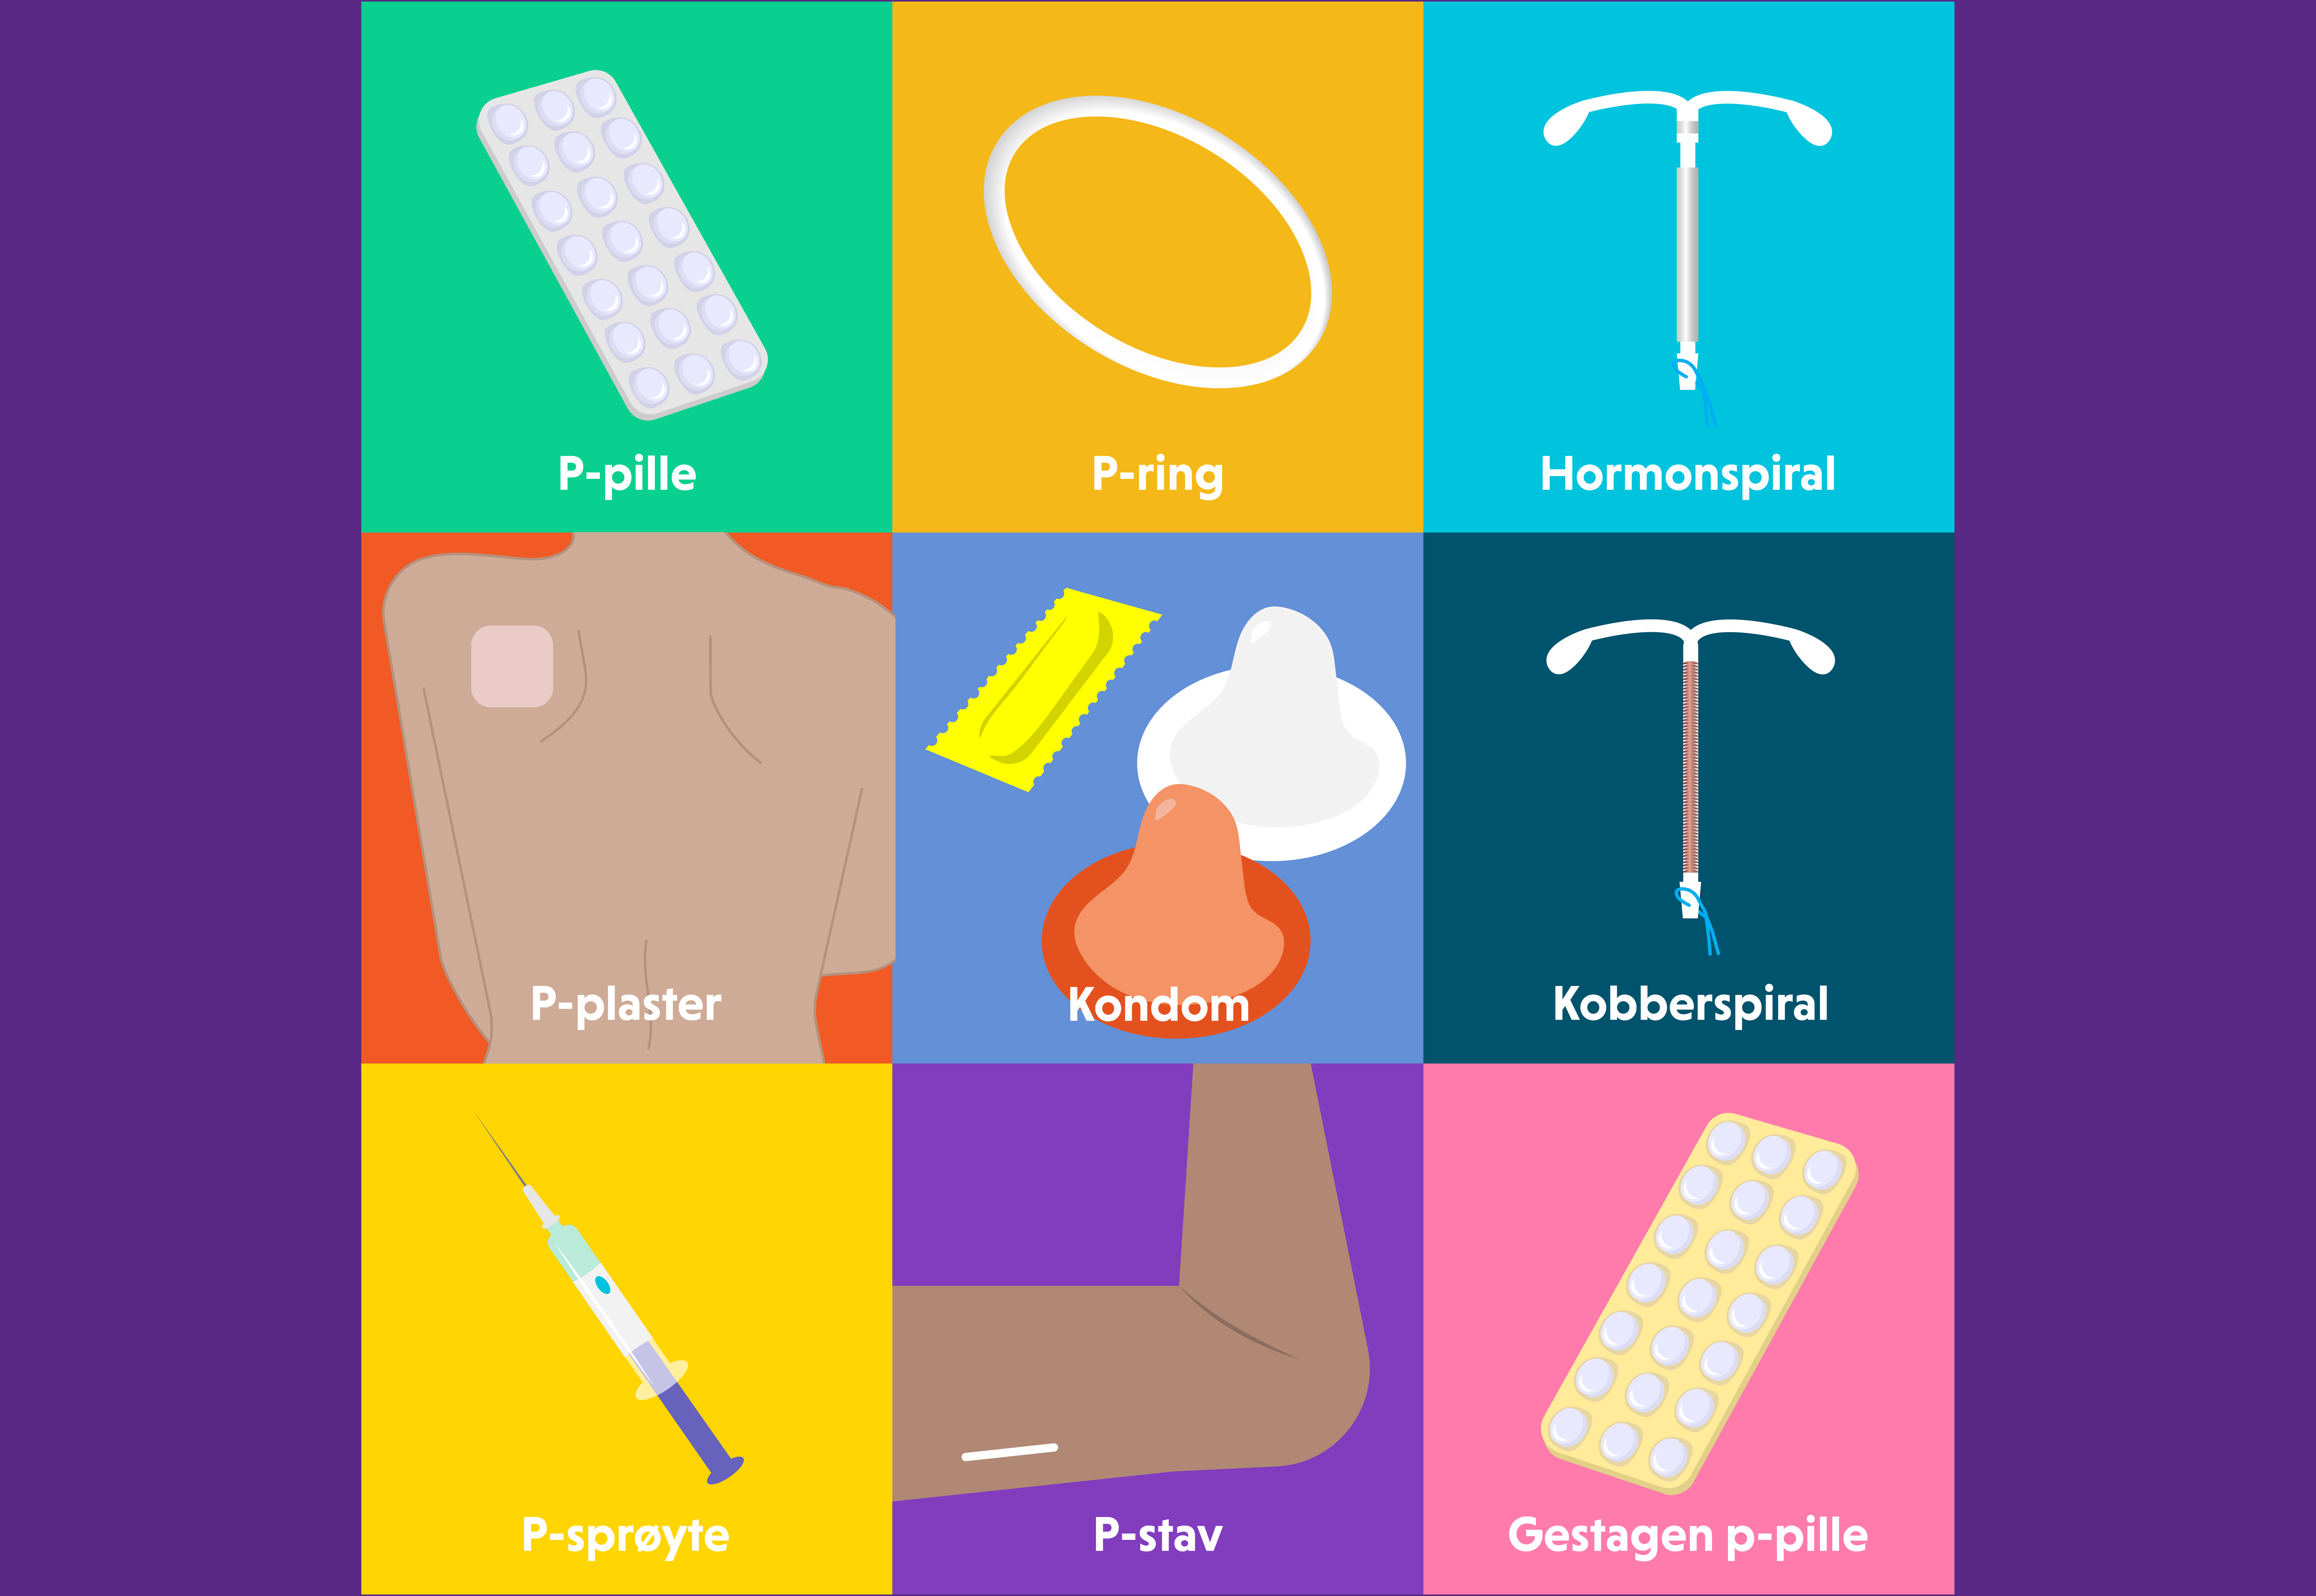 Illustrasjon av ulike prevensjonsmiddel: p-pille, p-ring, hormonspiral, p-plaster, kondom, kobberspiral, p-sprøyte, p-stav og gestagen p-pille